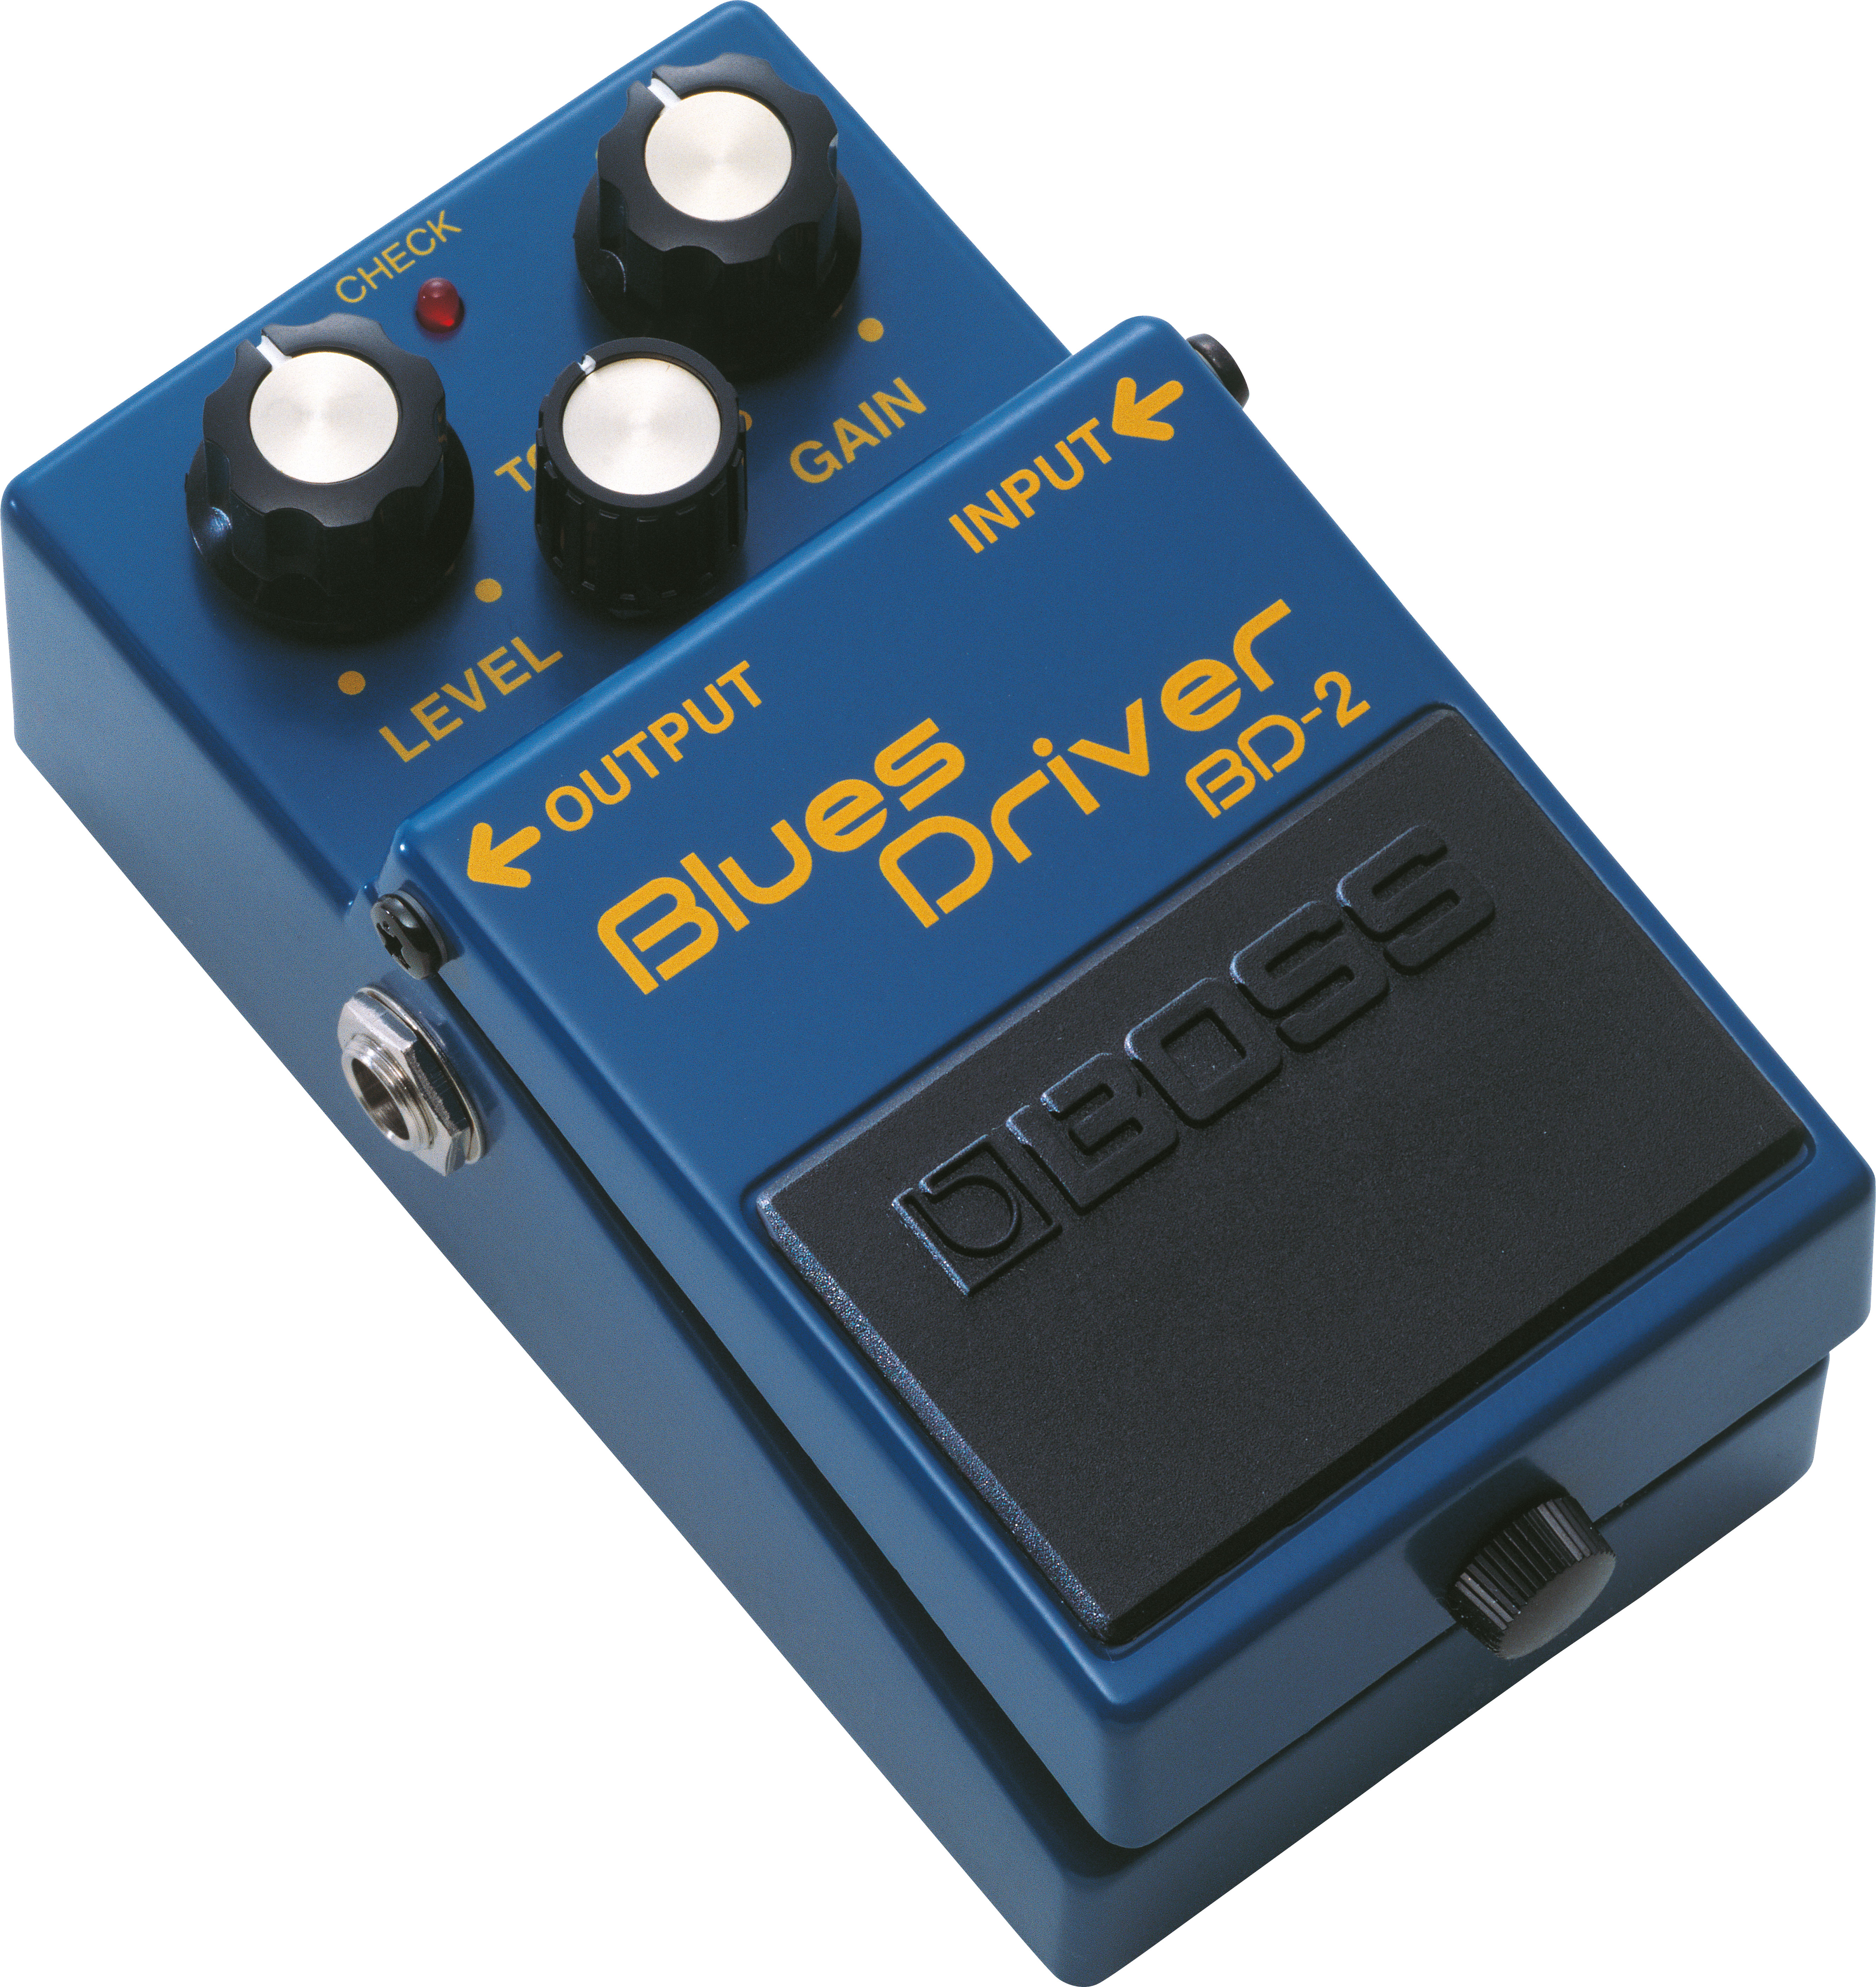 BD-2 Blues Driver